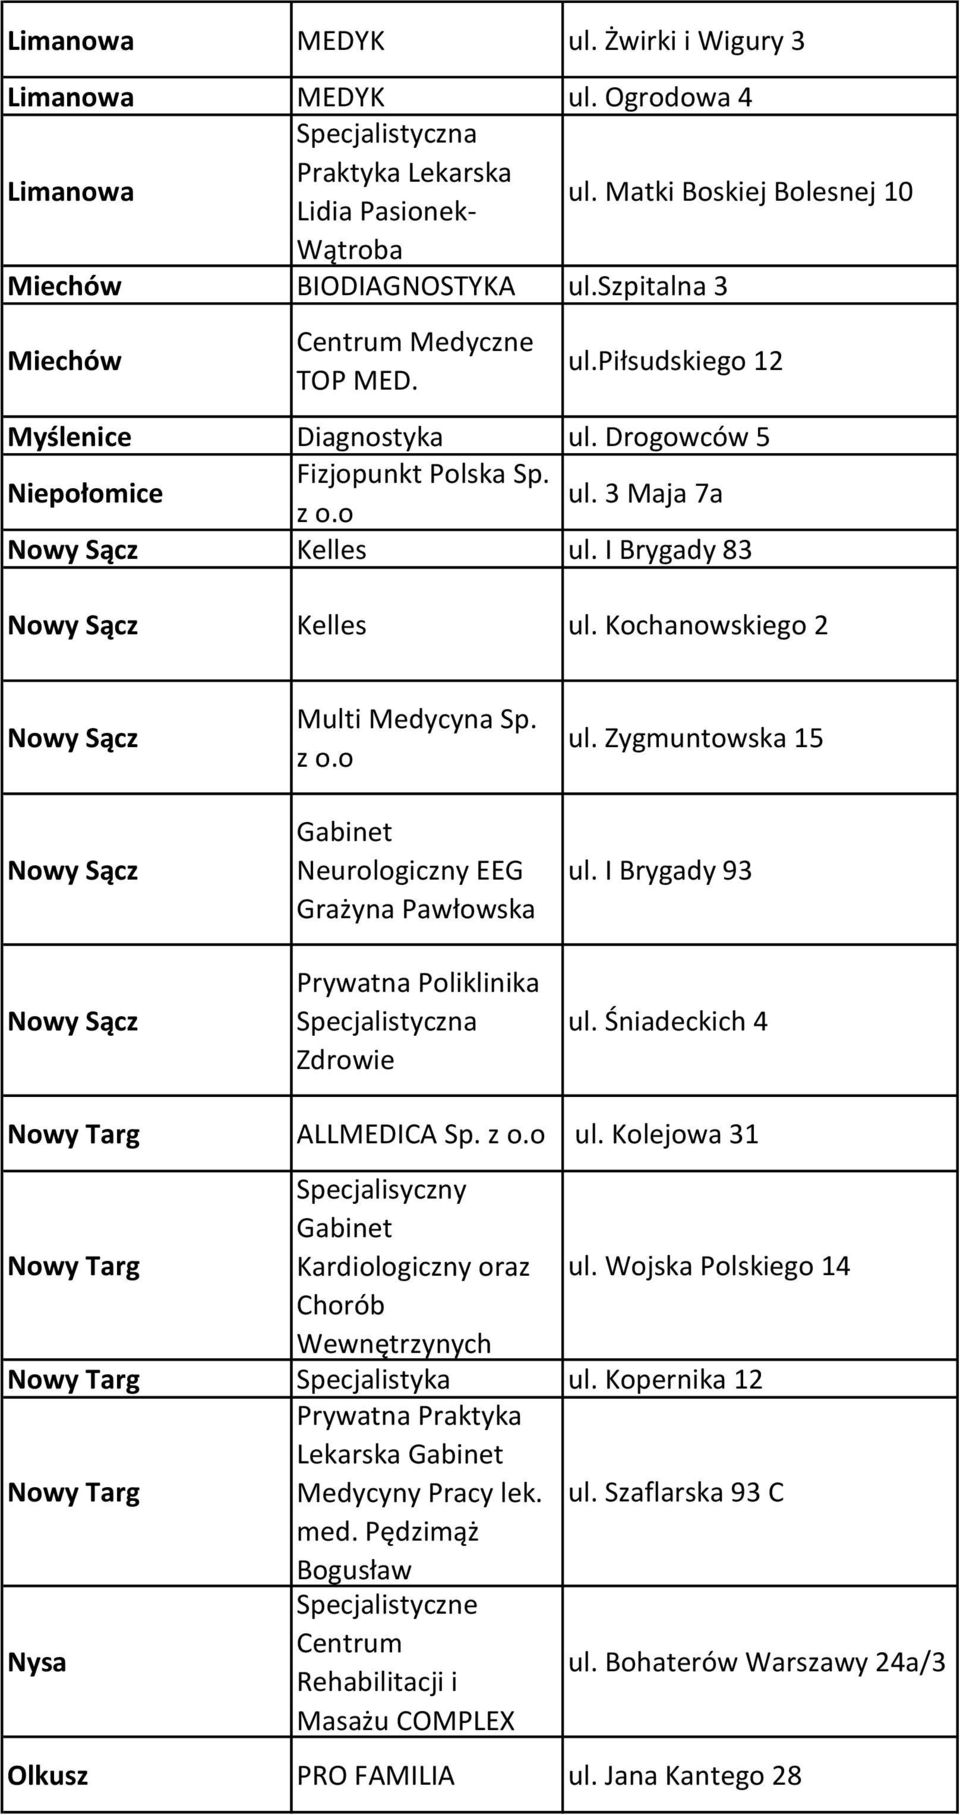 Zygmuntowska 15 ul. I Brygady 93 ul. Śniadeckich 4 Nowy Targ ALLMEDICA Sp. z o.o ul. Kolejowa 31 Nowy Targ Specjalisyczny Kardiologiczny oraz ul.